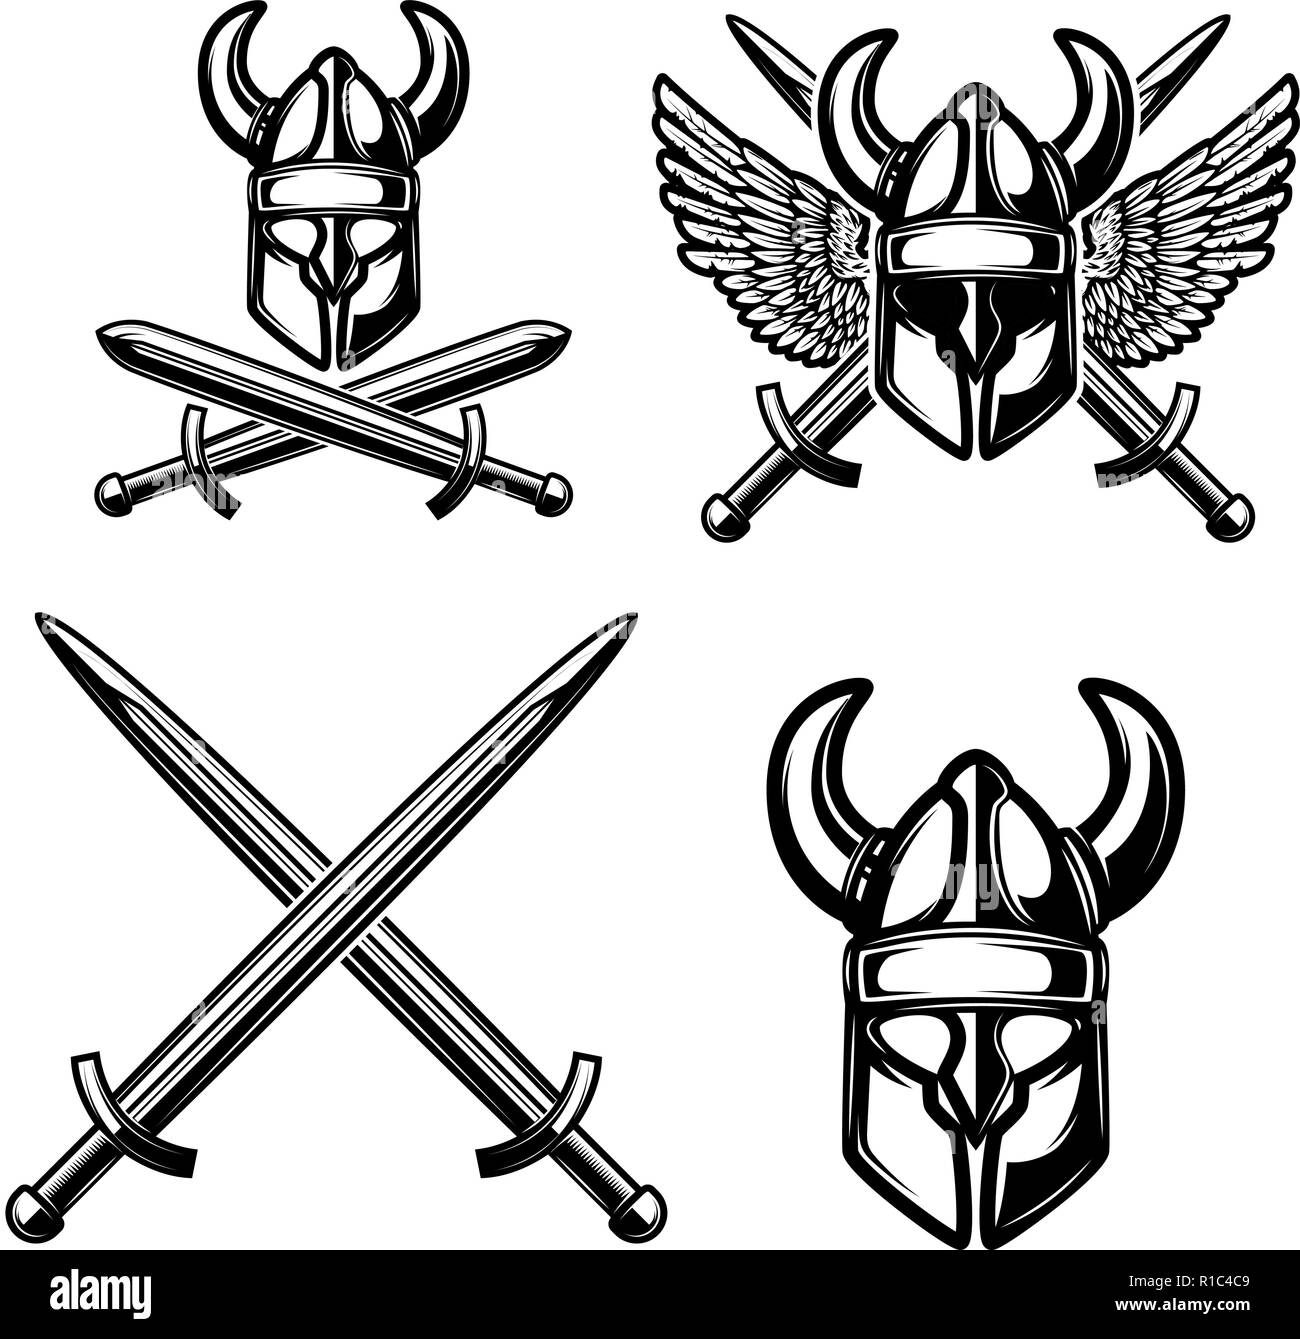 Satz von emblem Vorlage mit Viking Helm, gekreuzten Schwertern. Design Element für Logo, Label, sign. Vector Illustration Stock Vektor